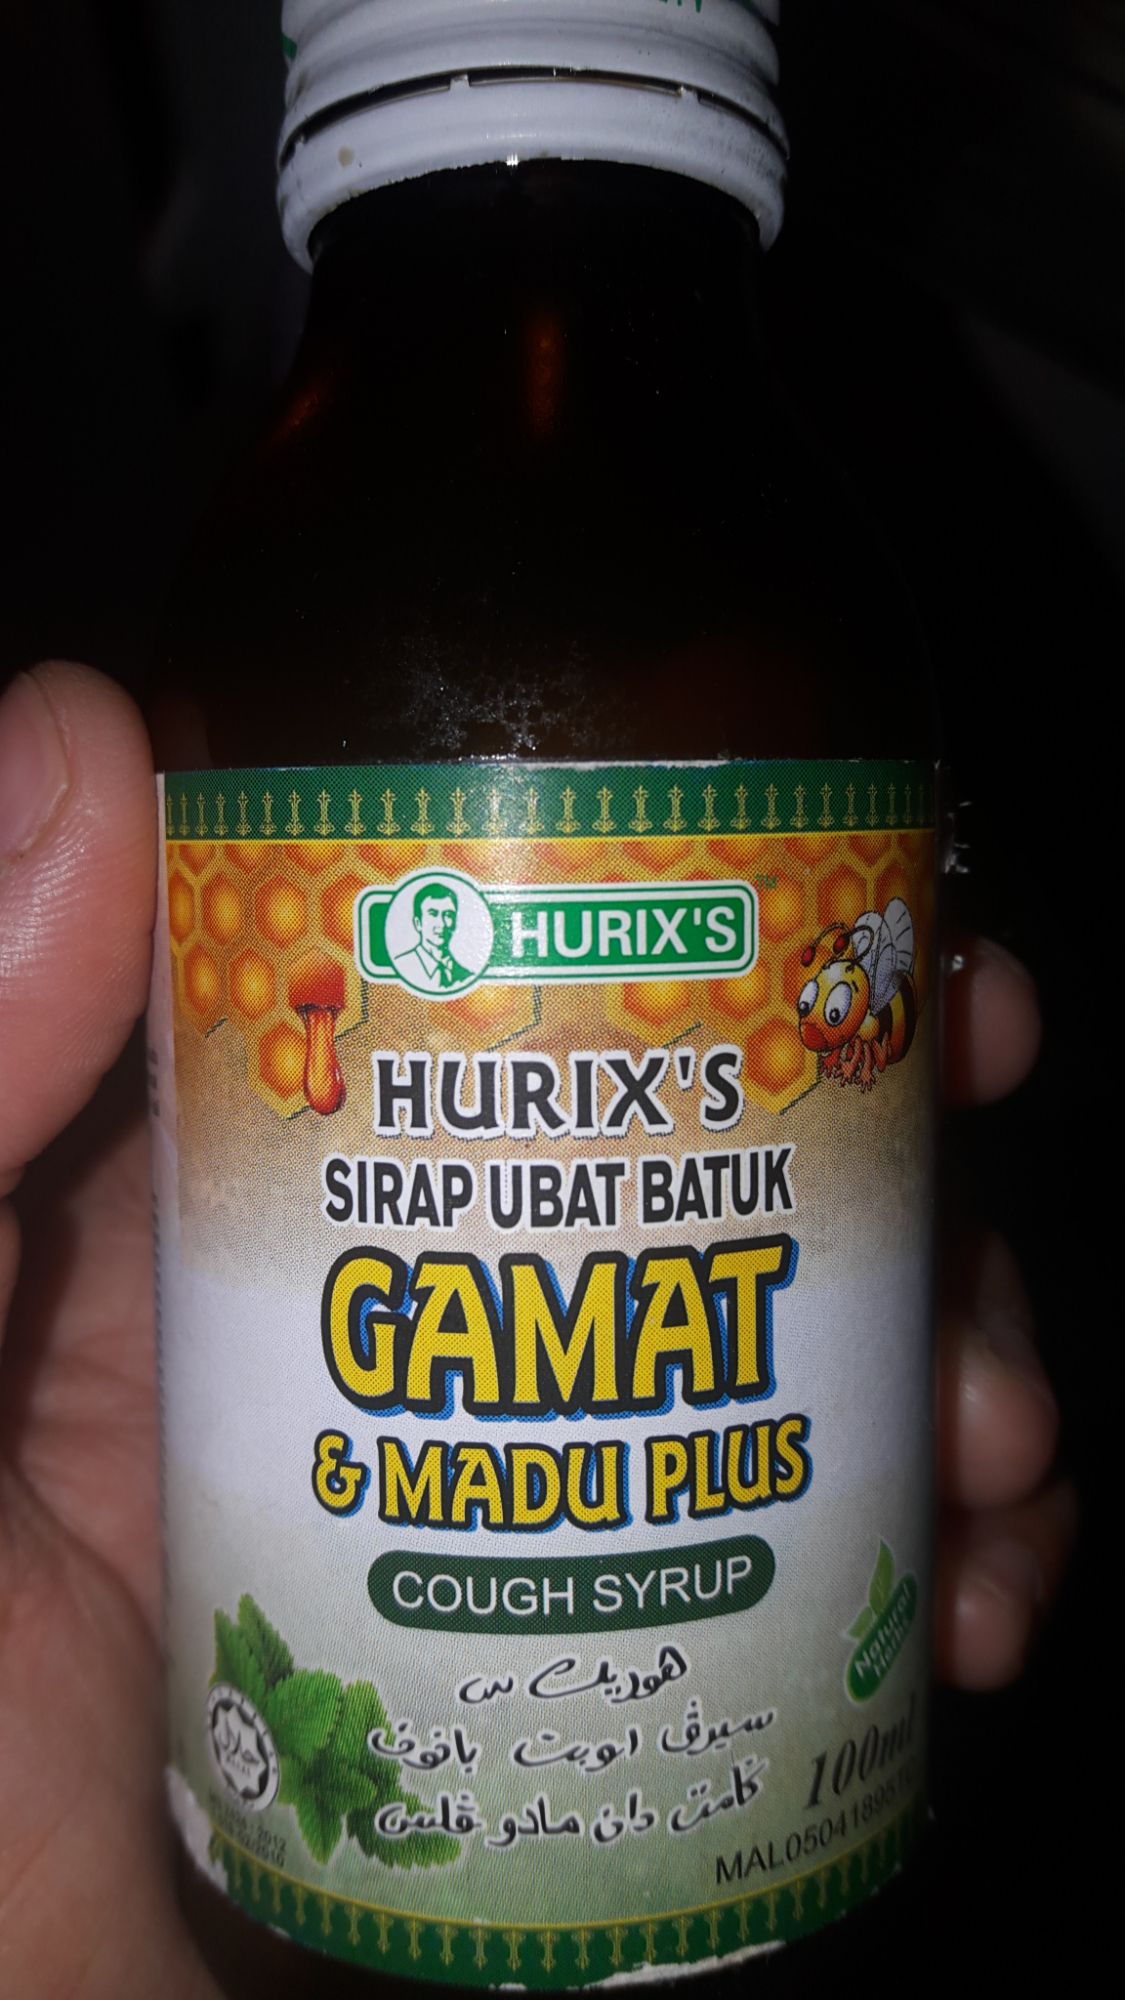 Hurix's Sirap Ubat Batuk Gamat & Madu Plus reviews